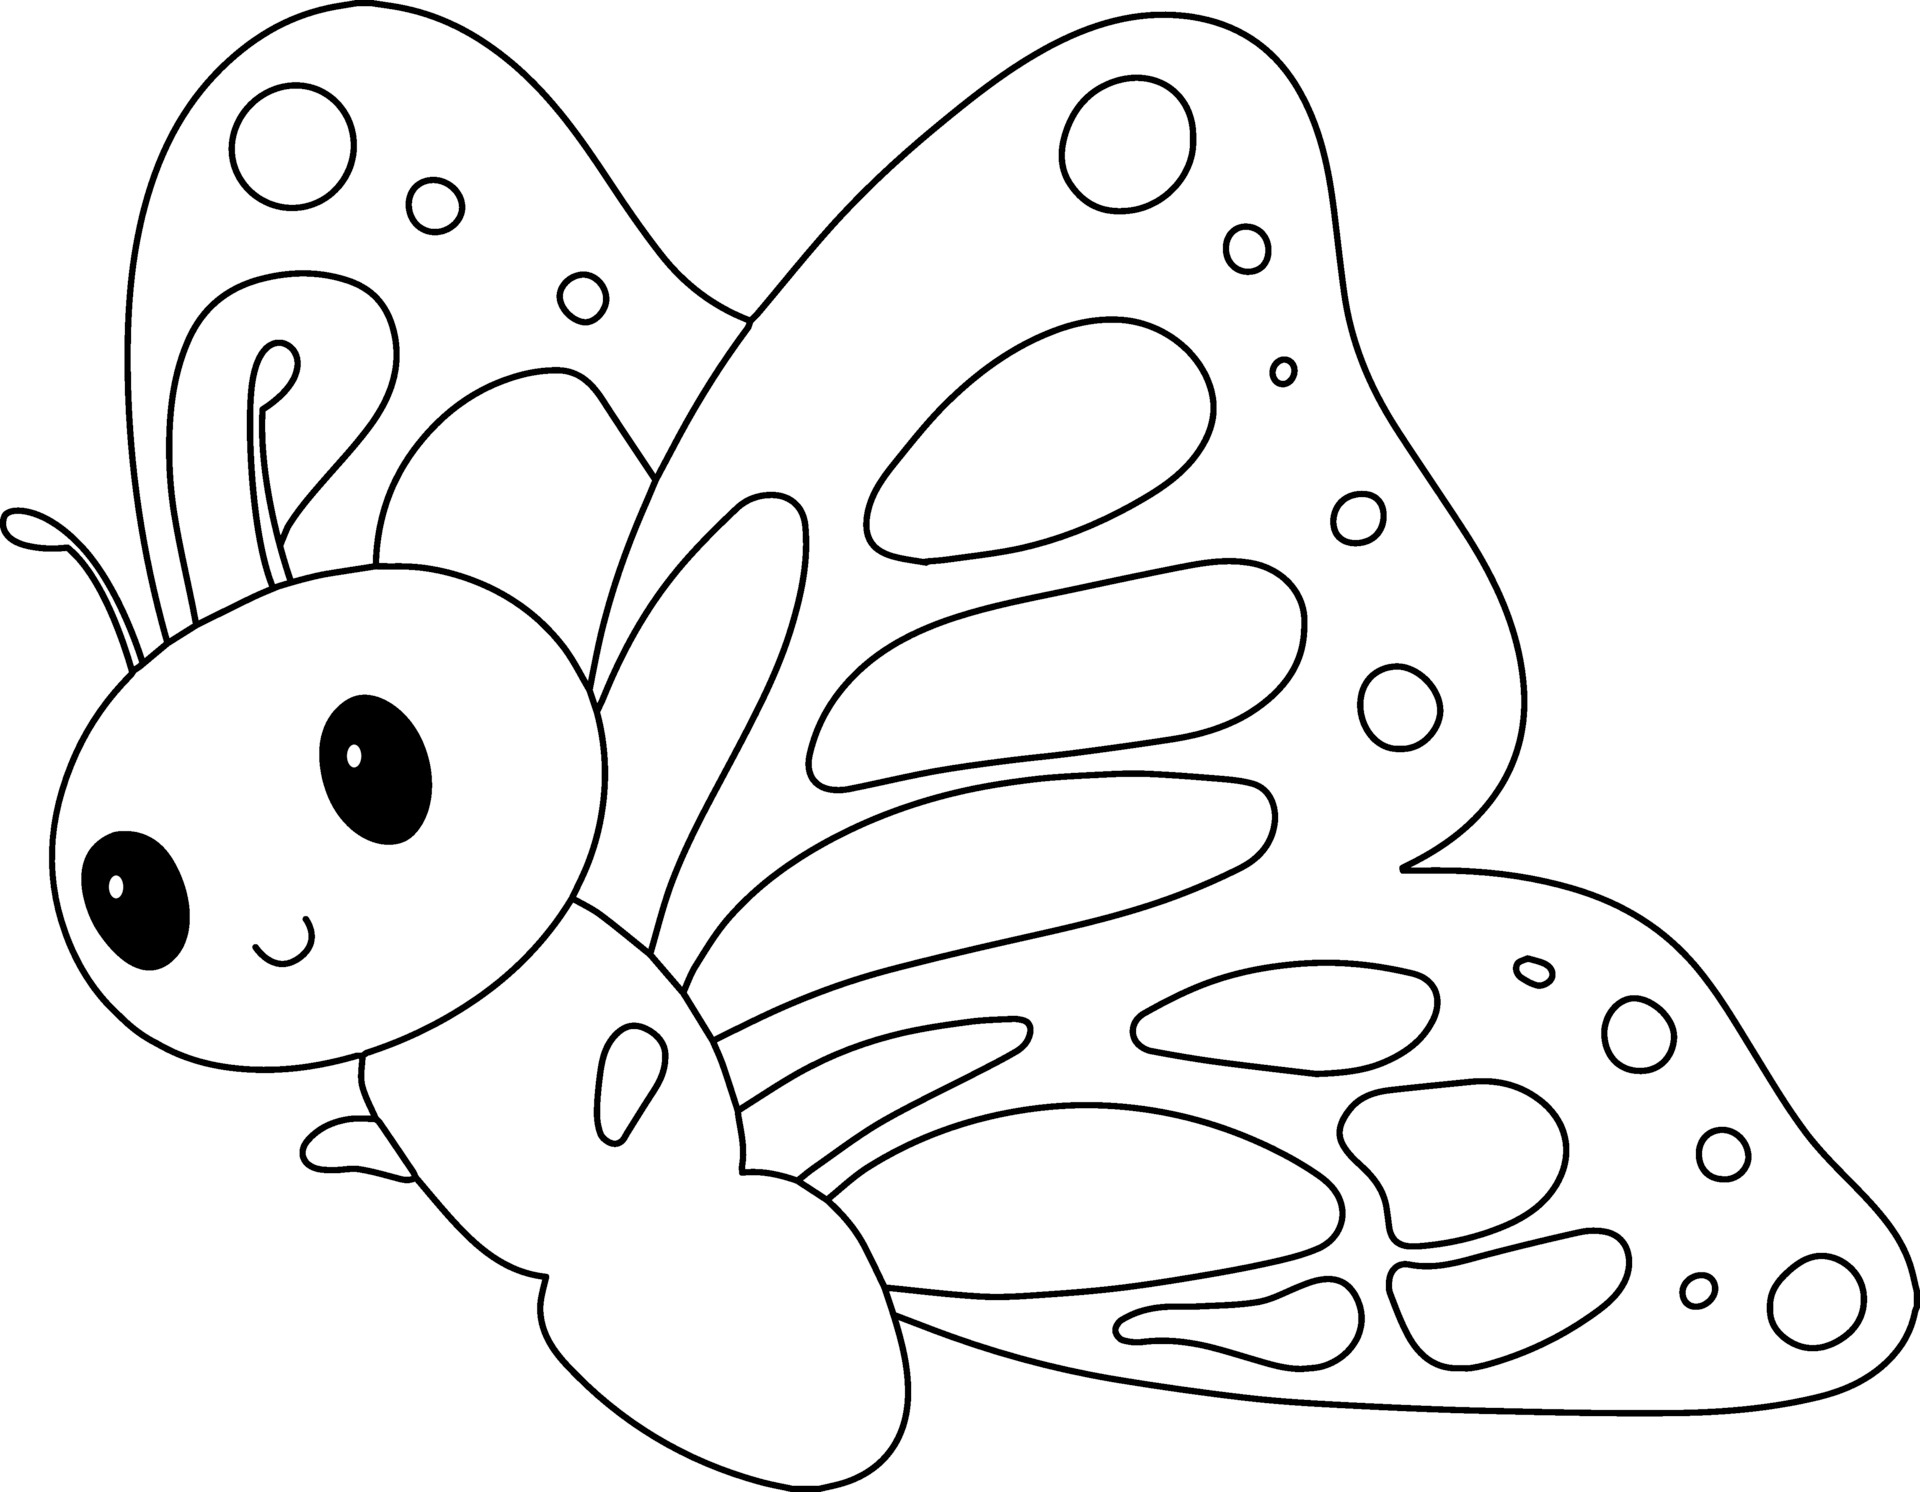 Farfalla Da Colorare Per Bambini Ottimo Per Il Libro Da Colorare Per Principianti 2297682 Scarica Immagini Vettoriali Gratis Grafica Vettoriale E Disegno Modelli